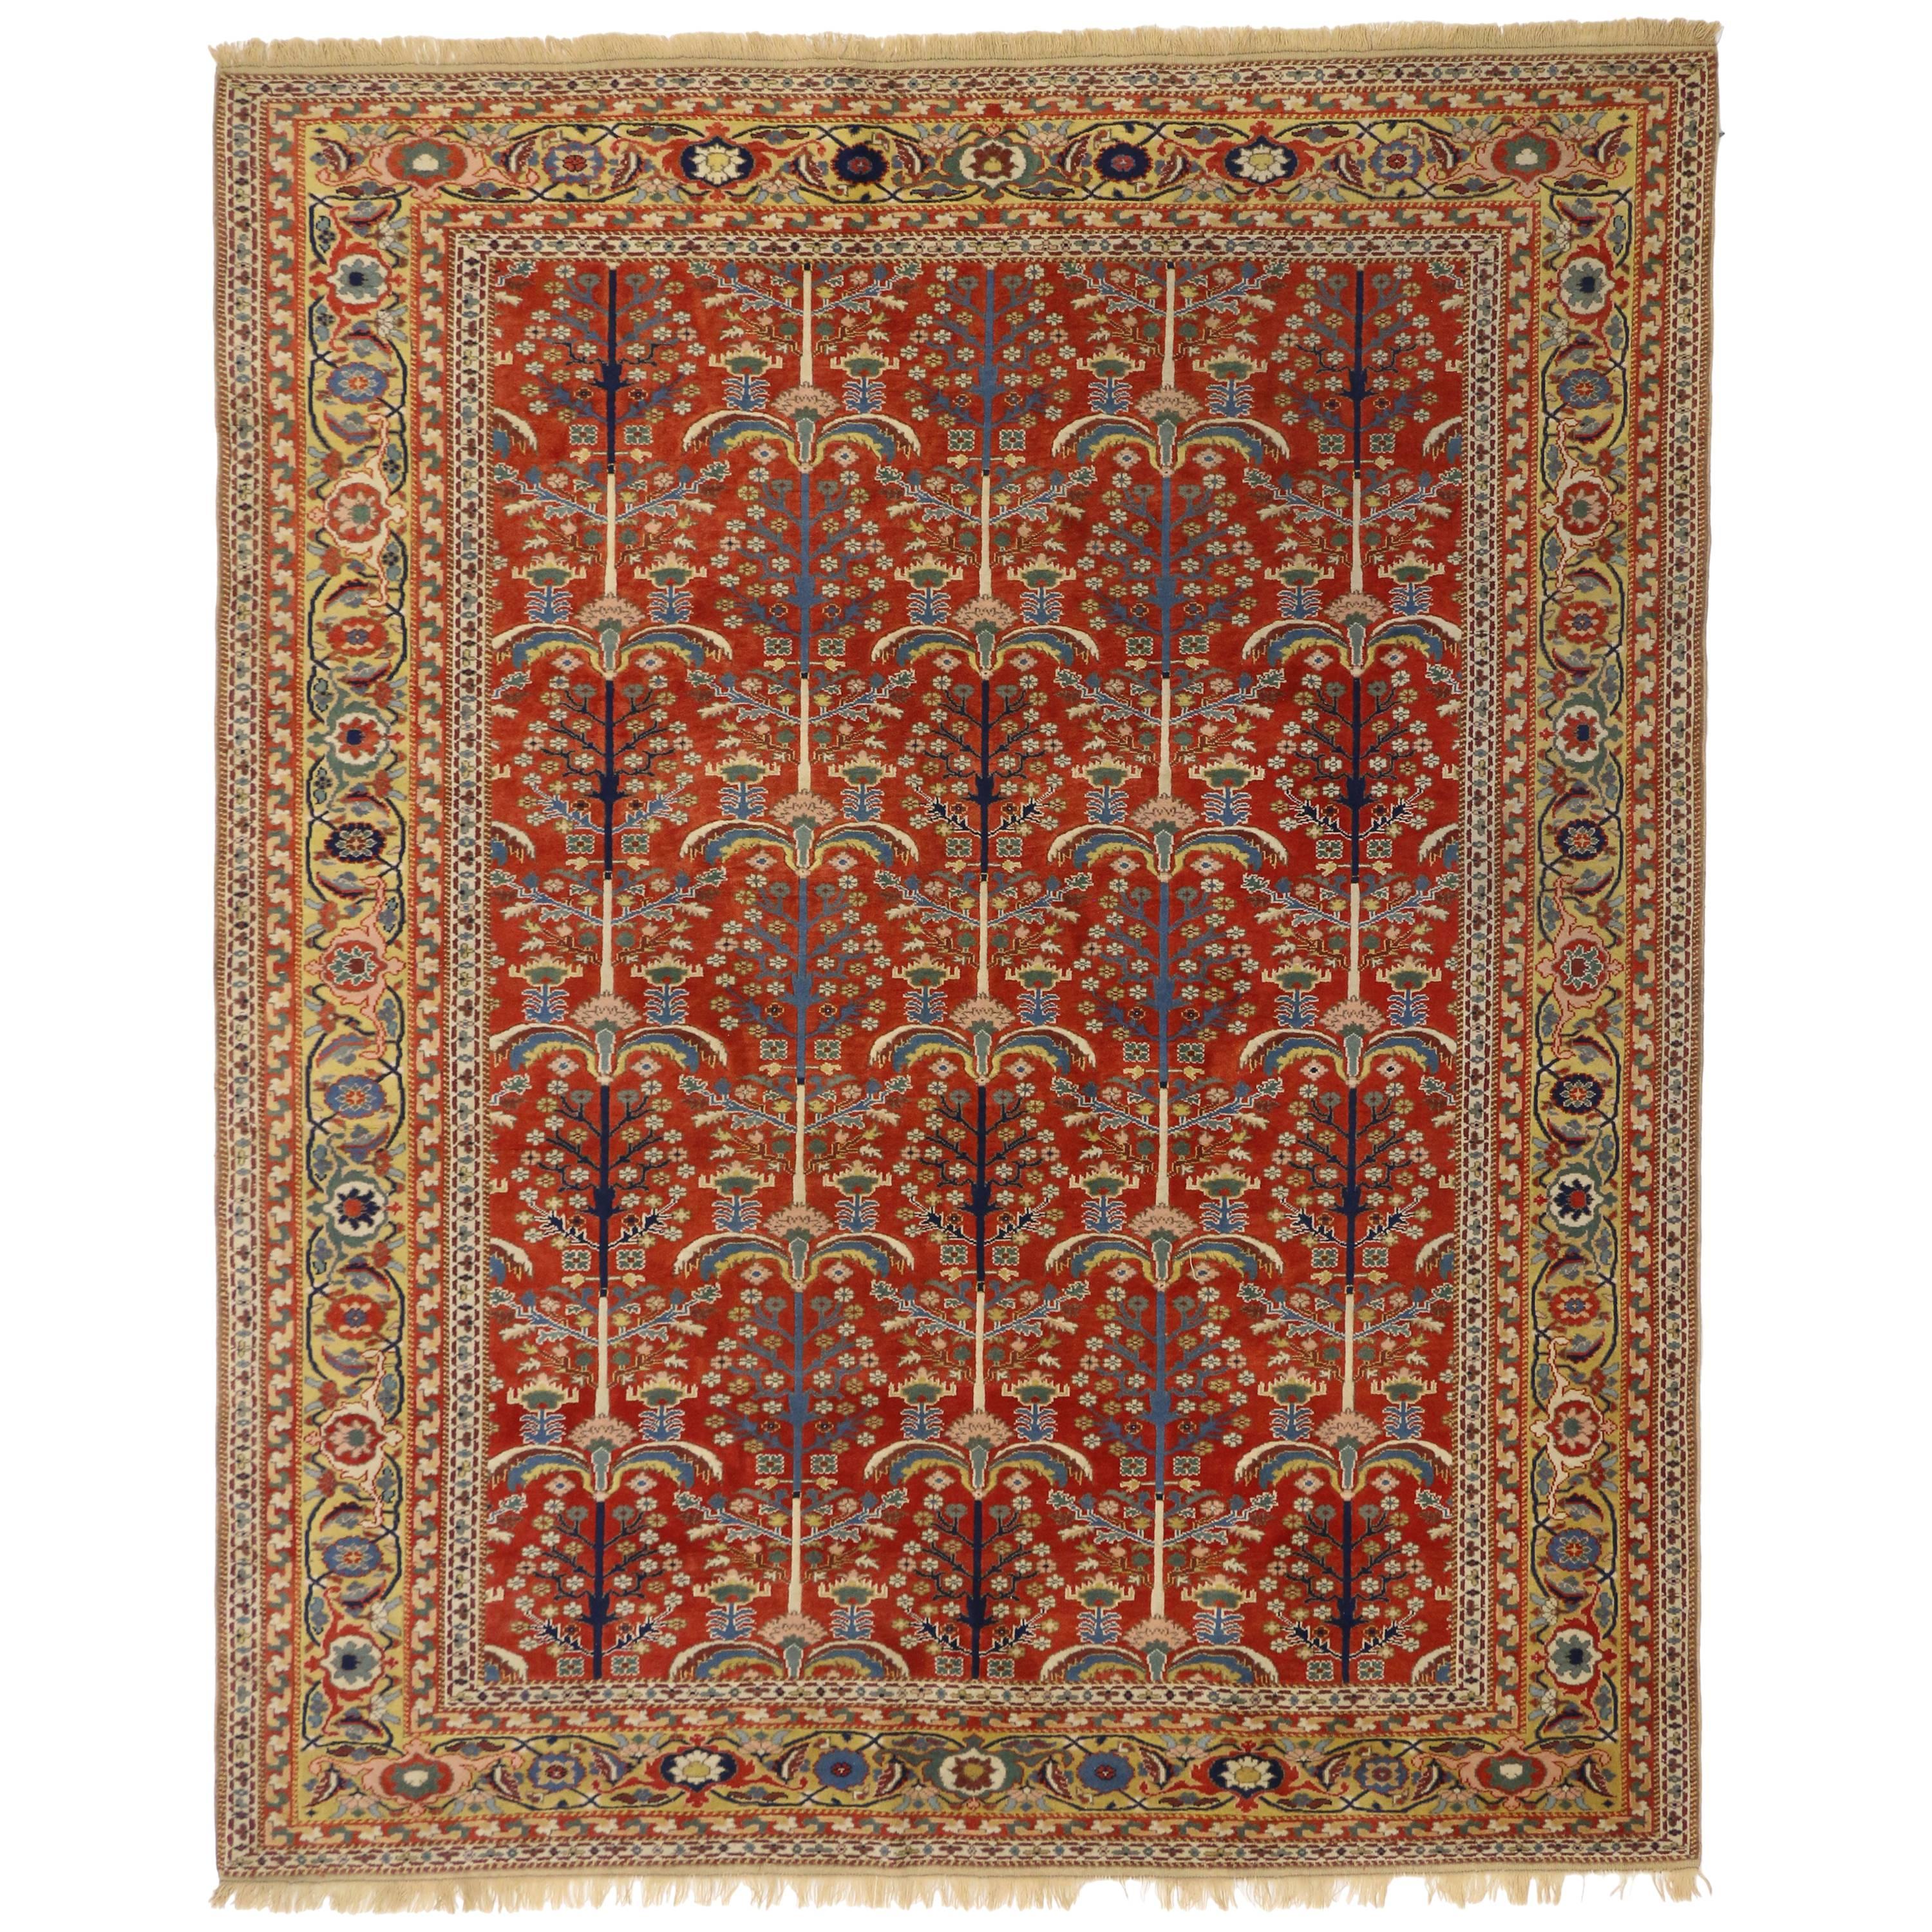 Türkischer Oushak-Teppich im modernen traditionellen Vintage-Stil mit Baum des Lebens-Design